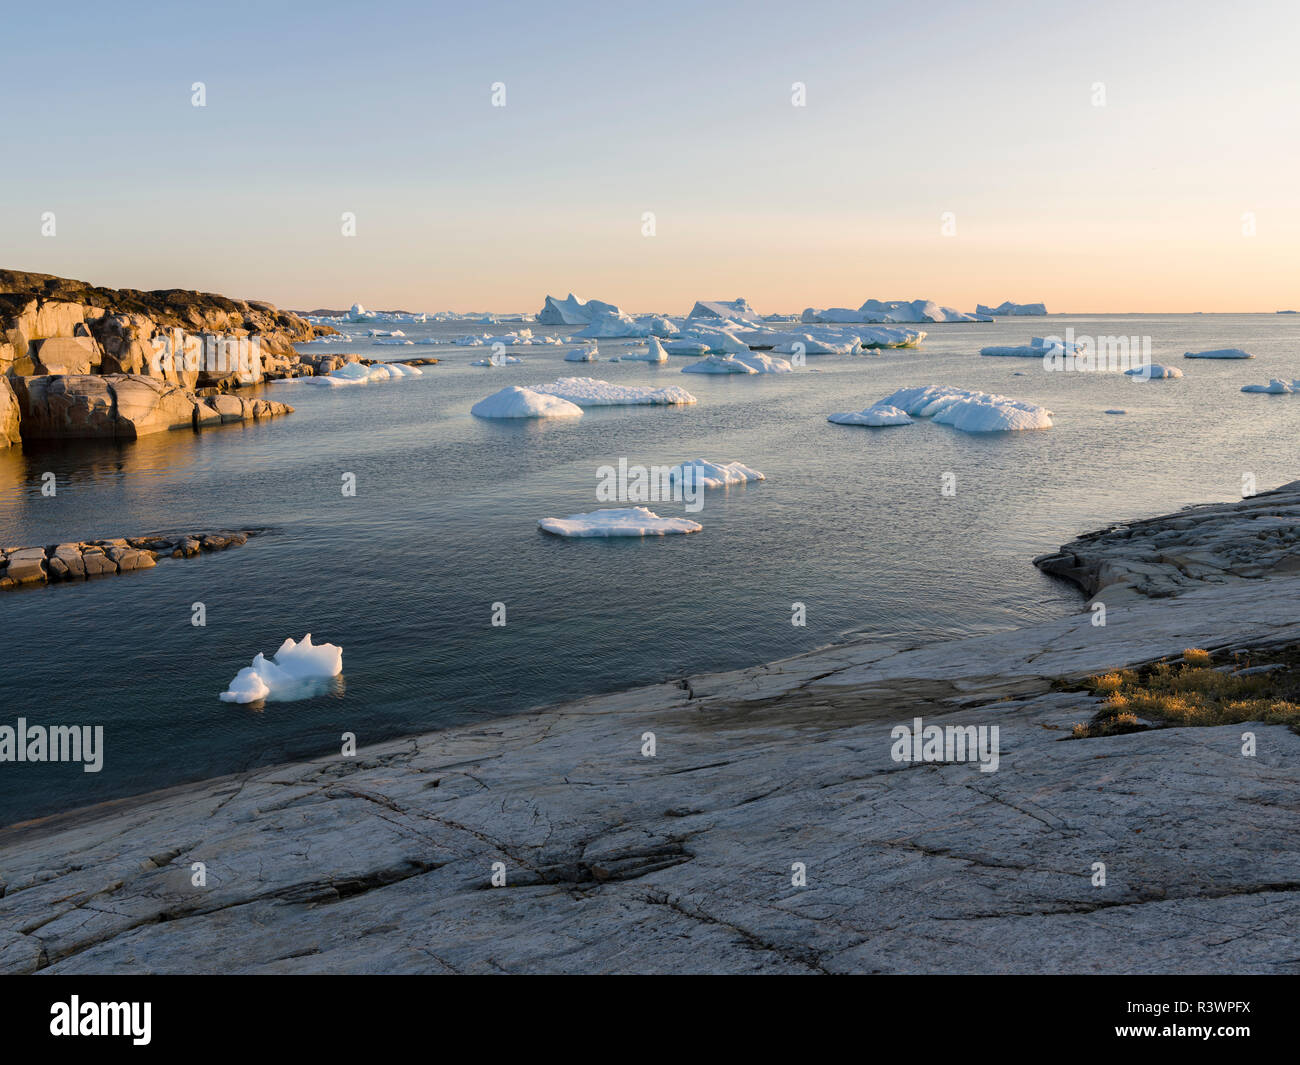 Paysage côtier avec des icebergs. Oqaatsut village Inuit (autrefois appelé Rodebay) situé dans la baie de Disko, Groenland, Danemark Banque D'Images